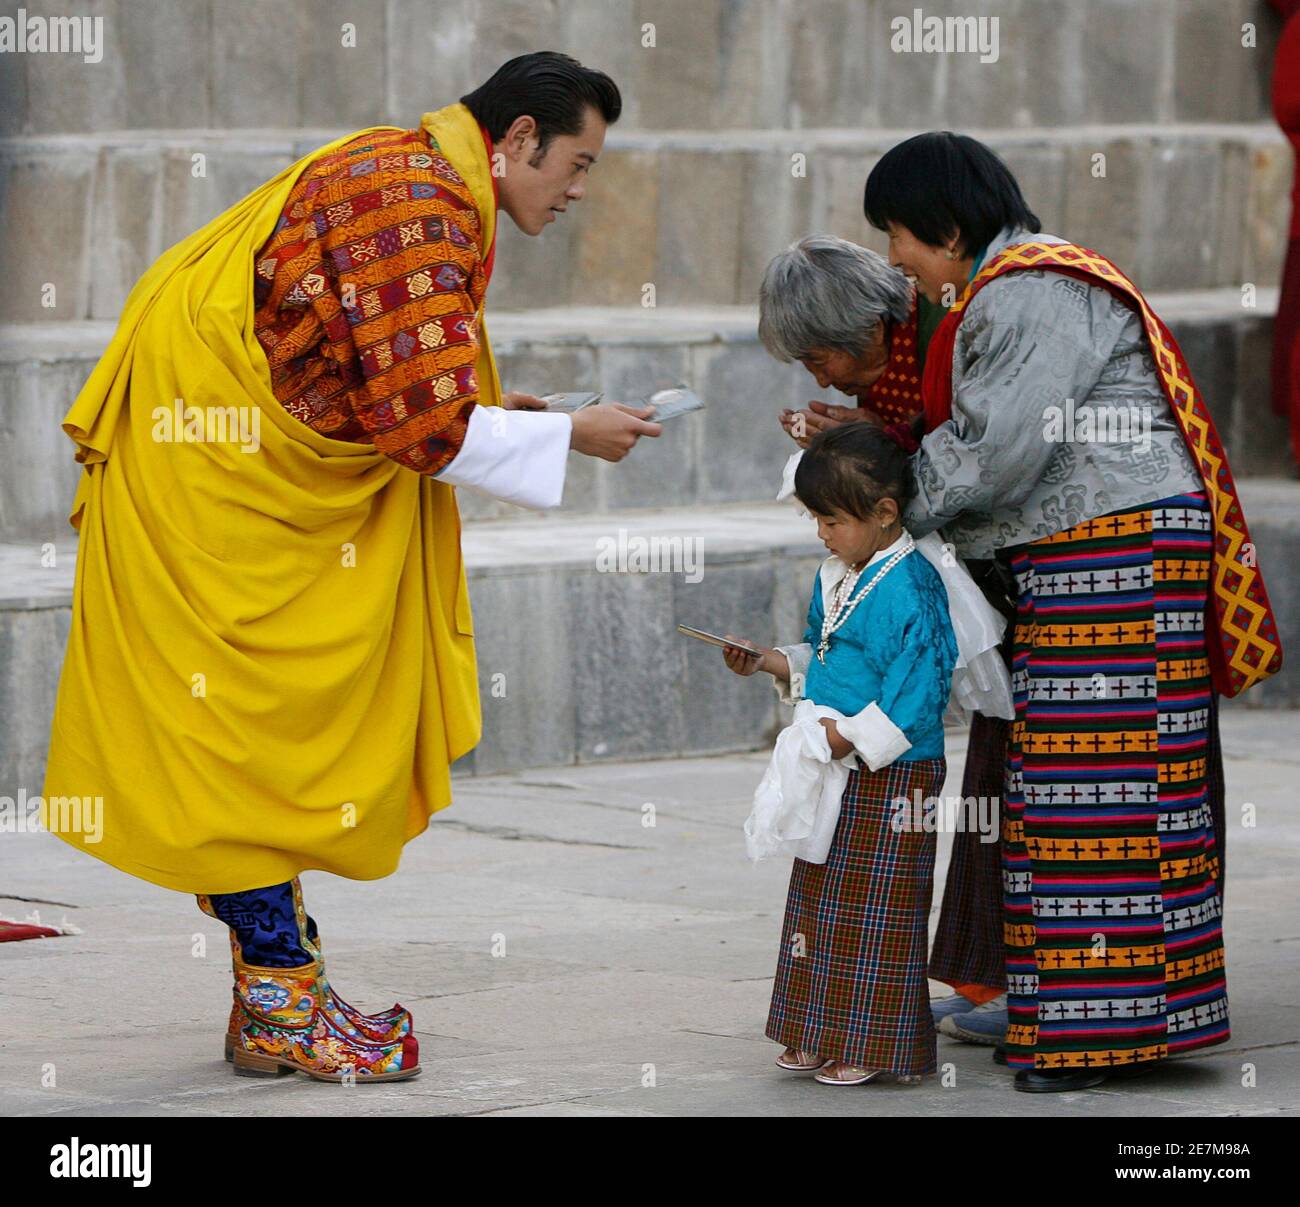 Bhutans König Jigme Khesar Namgyel Wangchuck bietet Geschenke für Menschen im Hof des Tashichhodzong Palastes während Feierlichkeiten seiner Krönungszeremonie in Thimphu 6. November 2008. Mit mittelalterlichen Tradition und buddhistische Spiritualität übernahm ein 28-jährige mit einer Ausbildung in Oxford Raven Crown of Bhutan am Donnerstag, um jüngste Demokratie der Welt zu führen, wie es in der modernen Welt entsteht. REUTERS/Desmond Boylan (BHUTAN) Stockfoto